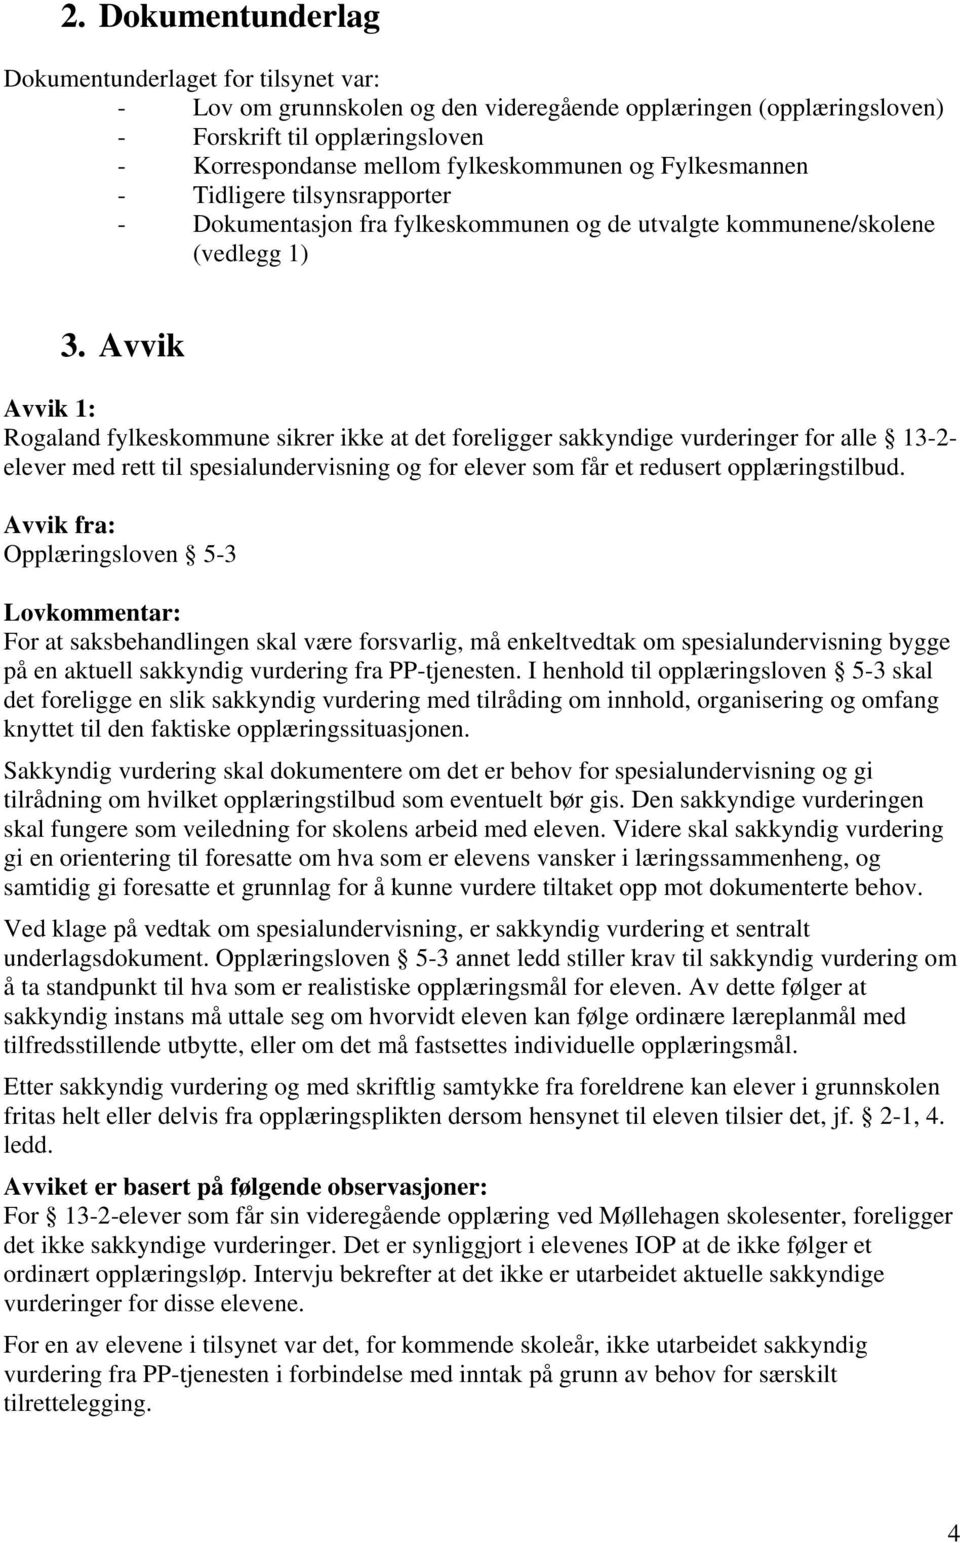 Avvik Avvik 1: Rogaland fylkeskommune sikrer ikke at det foreligger sakkyndige vurderinger for alle 13-2- elever med rett til spesialundervisning og for elever som får et redusert opplæringstilbud.